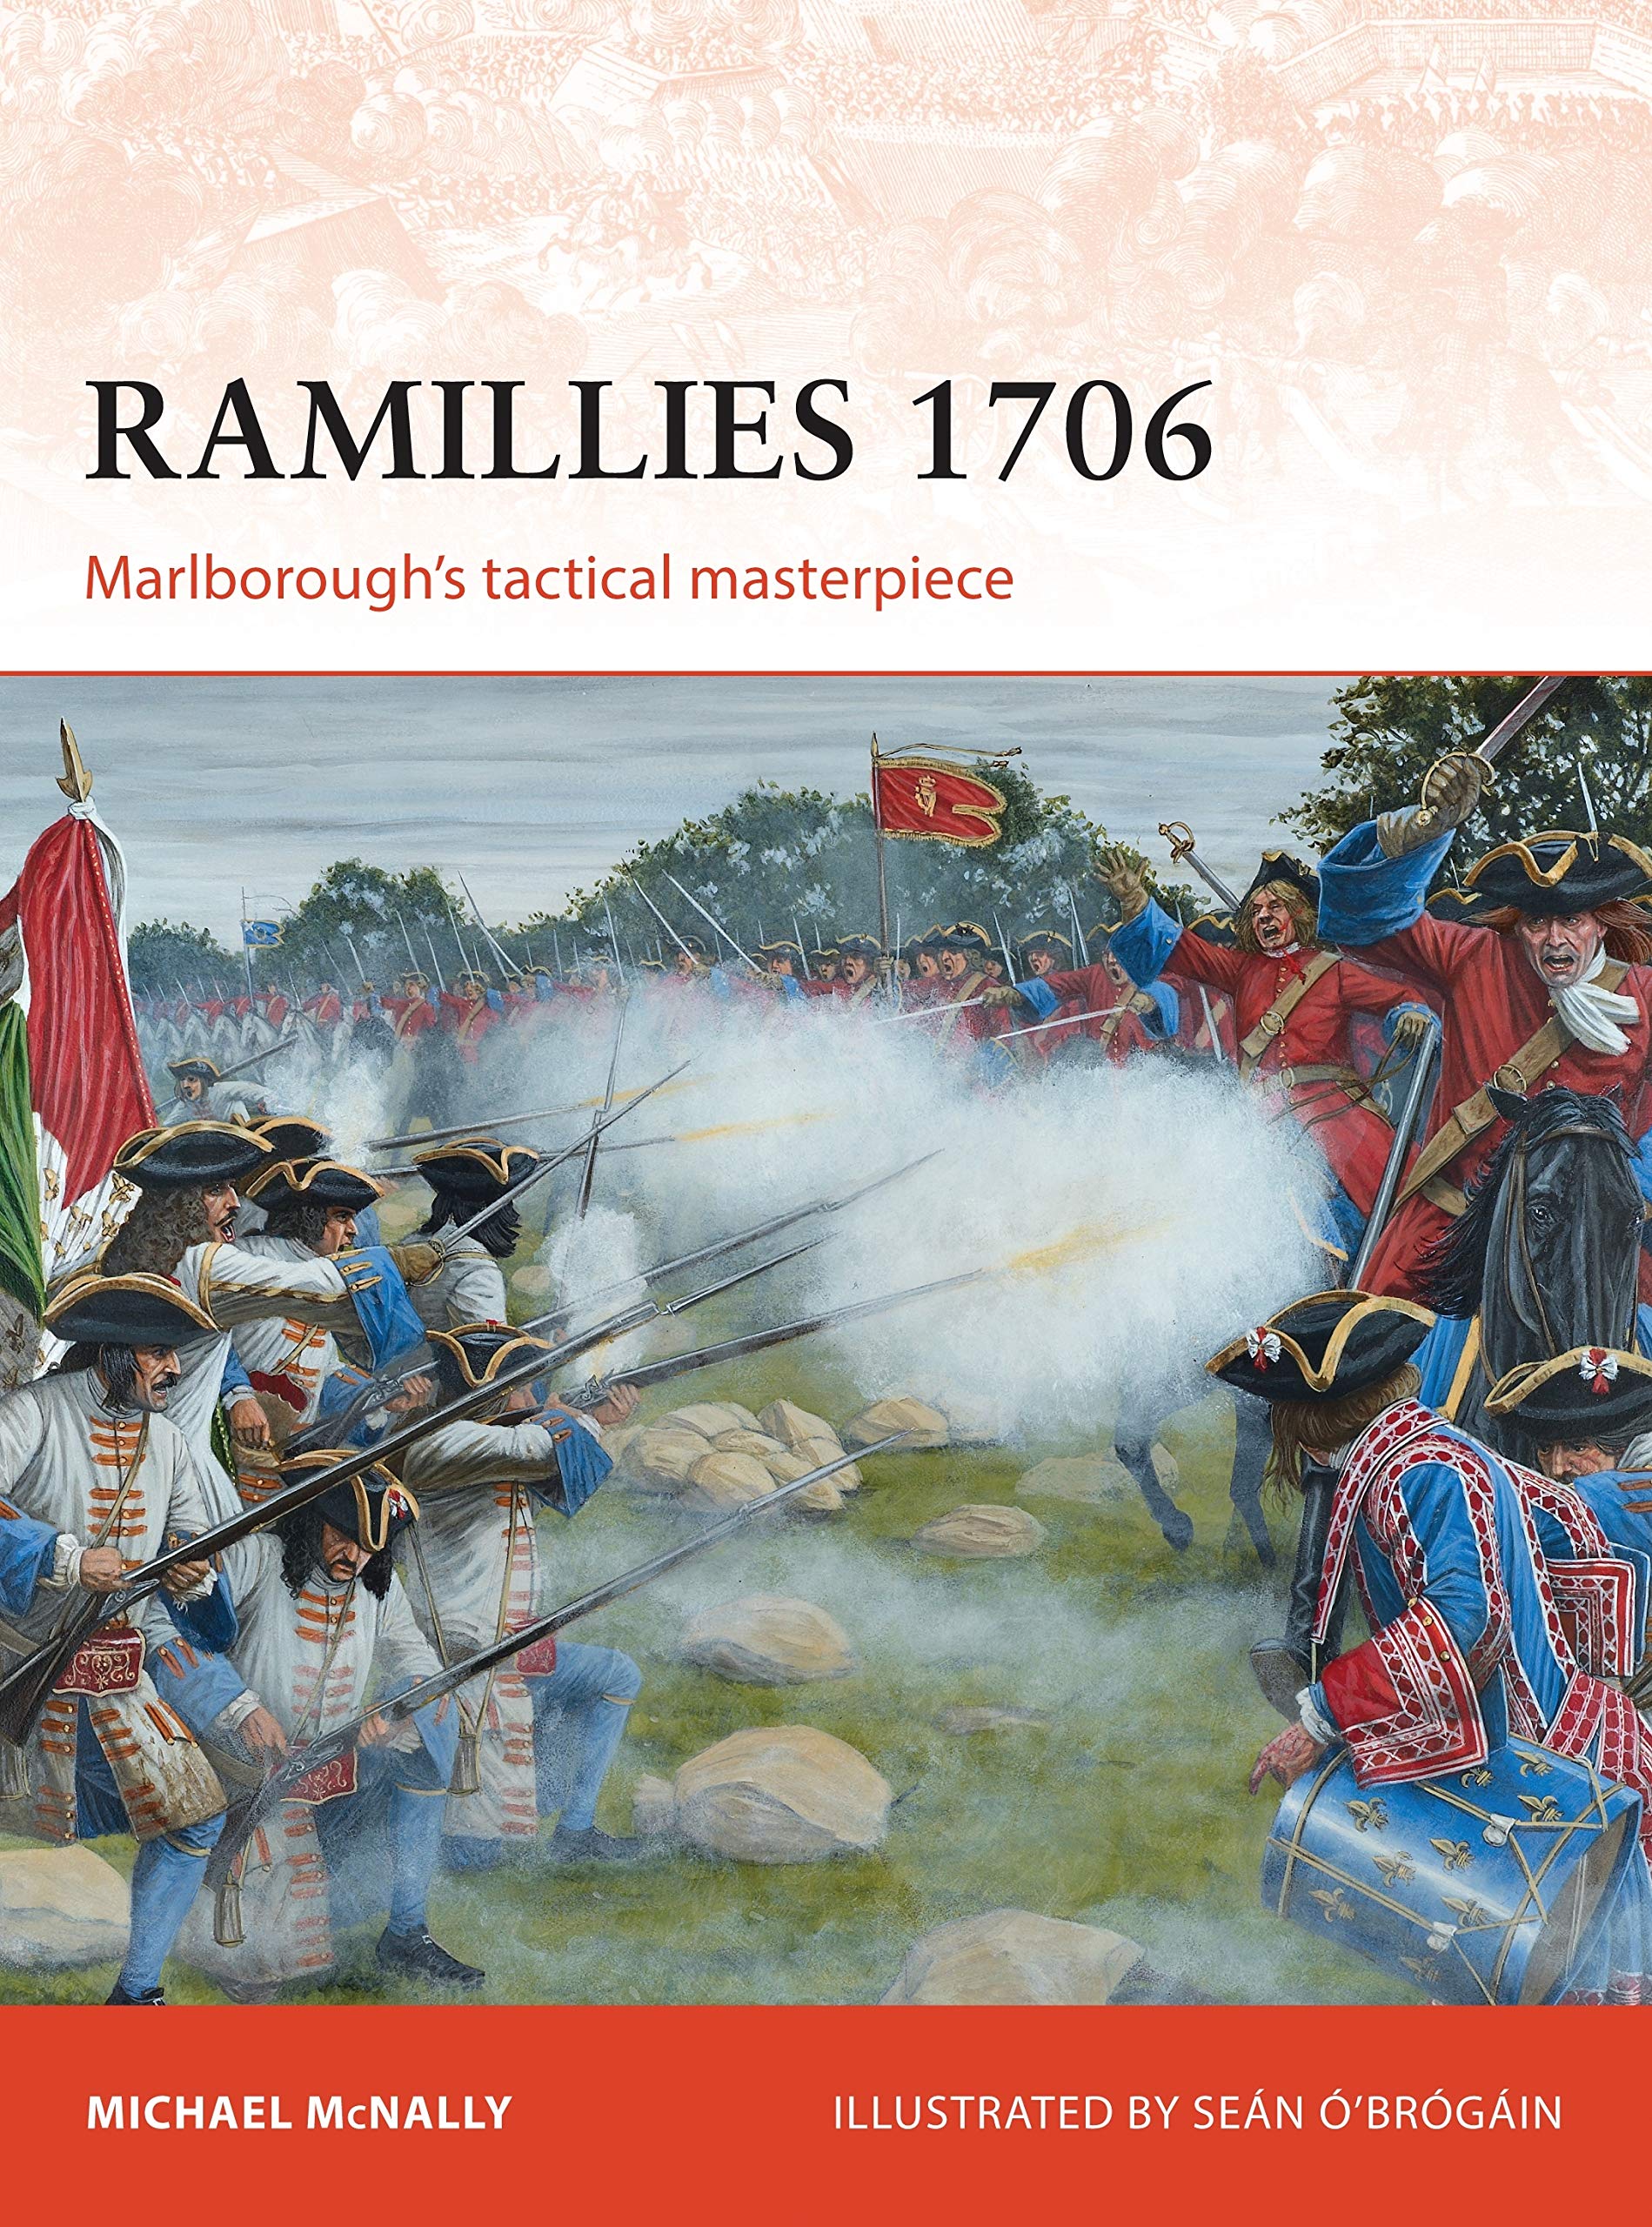 Cela s'est passé le 23 Mai - Chronique culturelle - Histoire - Ramillies-1706